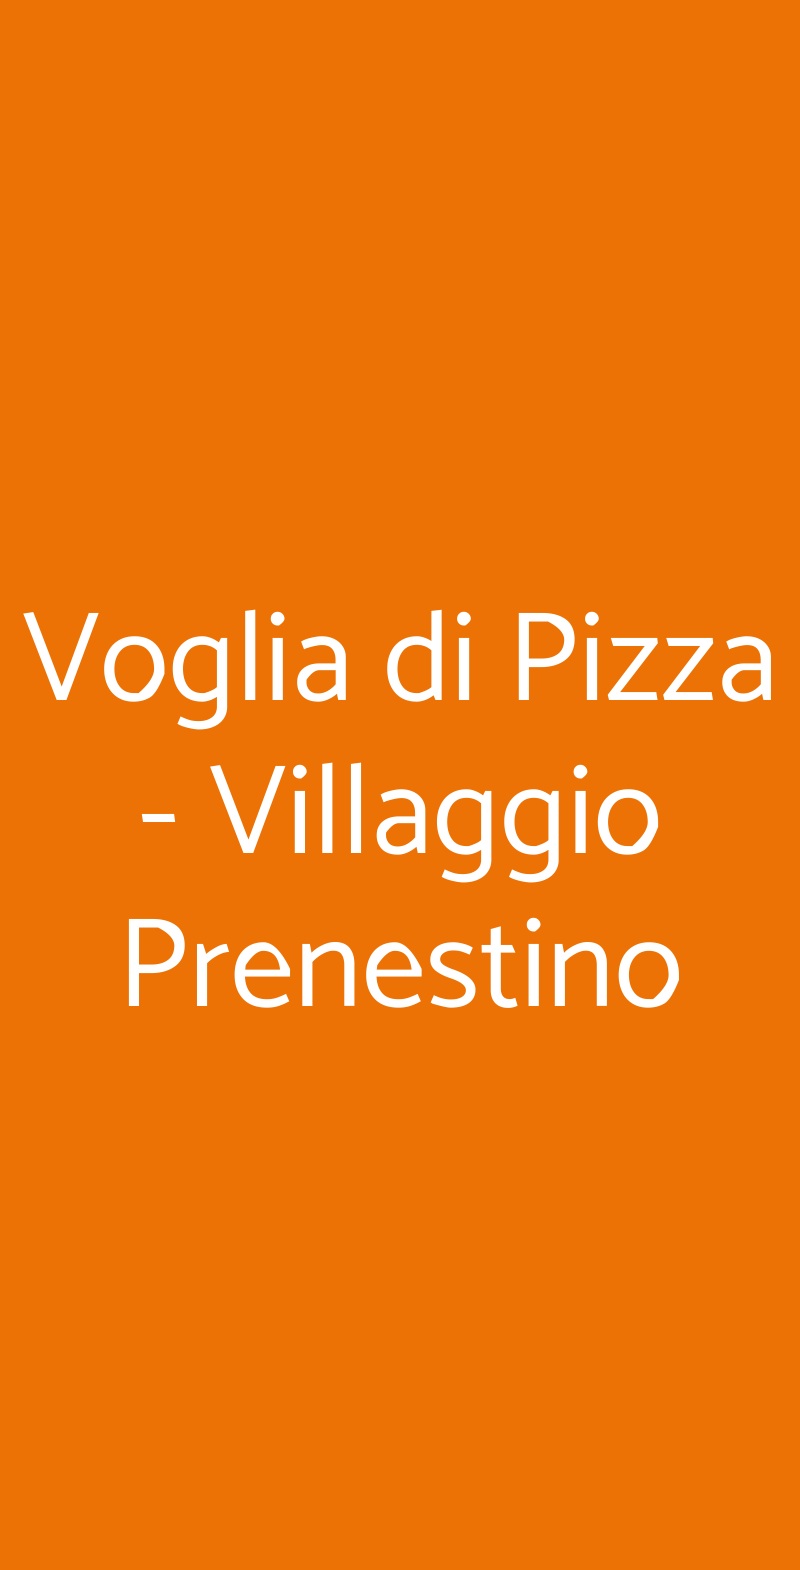 Voglia di Pizza - Villaggio Prenestino Roma menù 1 pagina